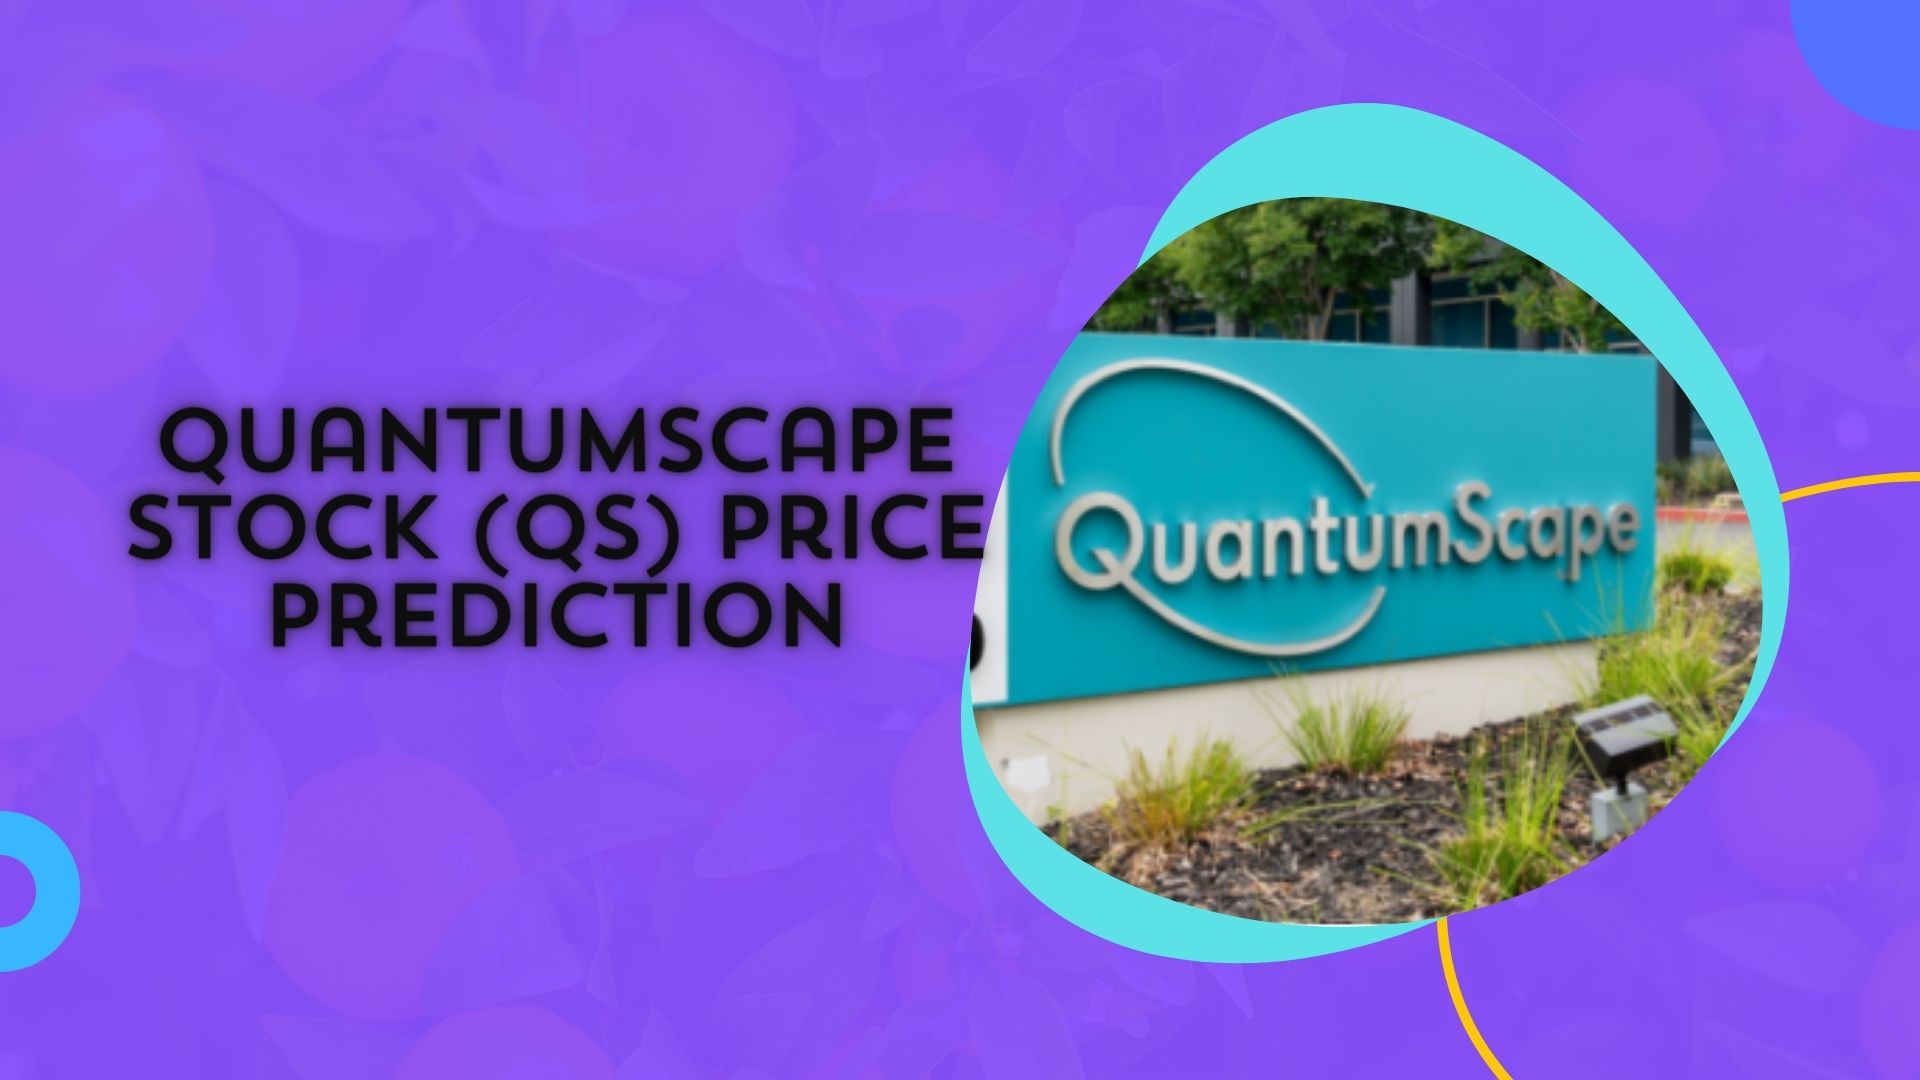 Quantumscape Stock Price Prediction